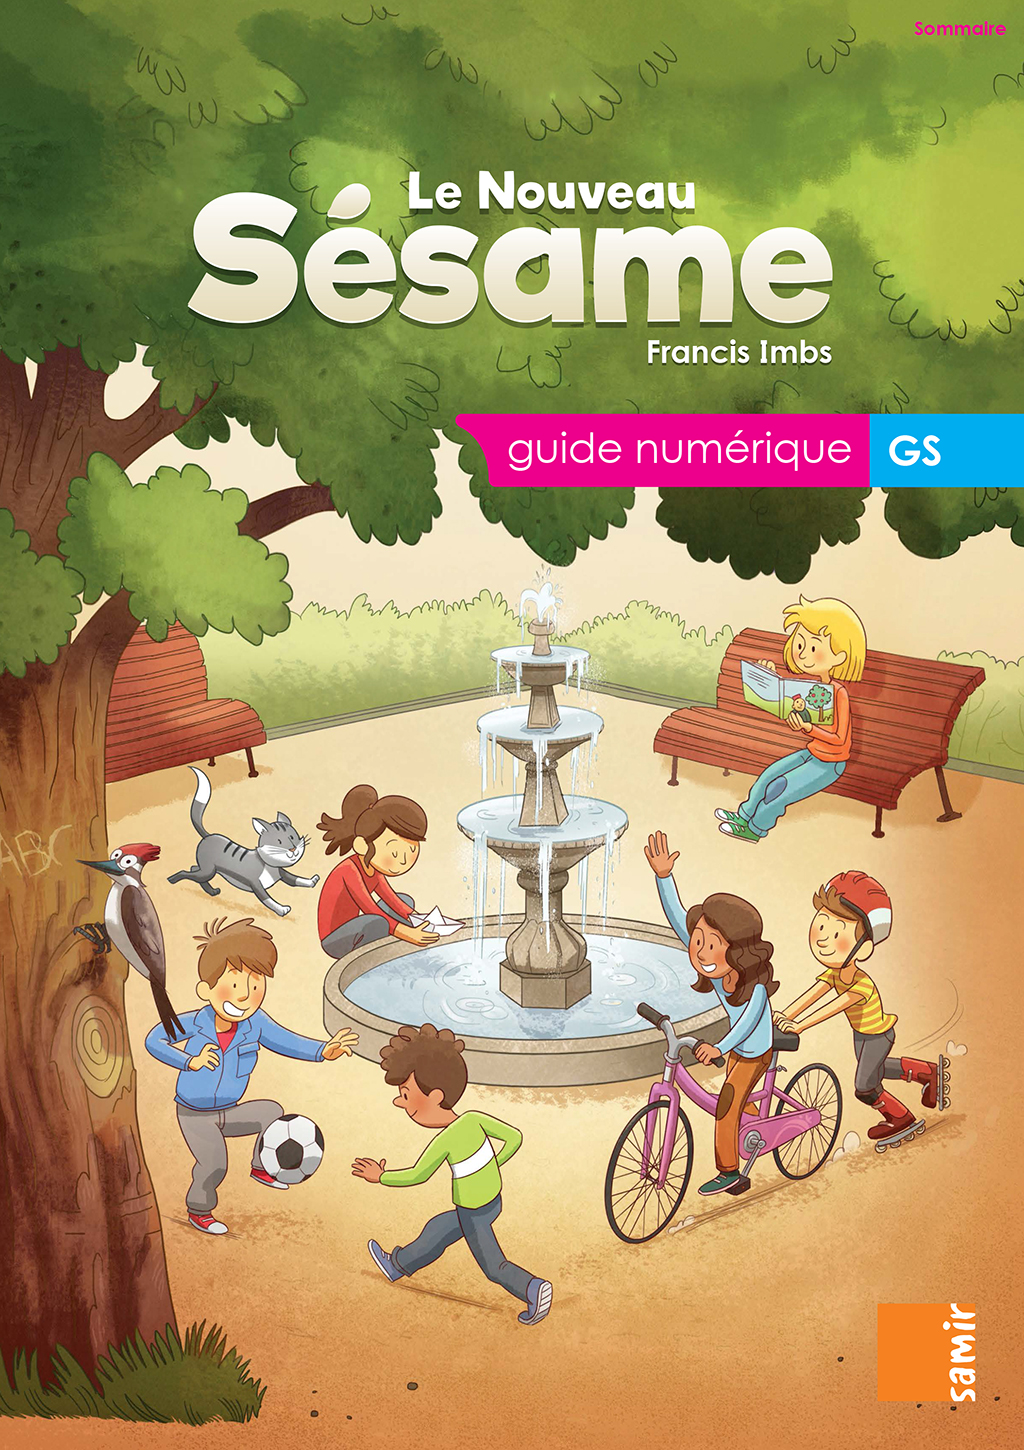 Samir Éditeur - Guide numérique GS - Couverture